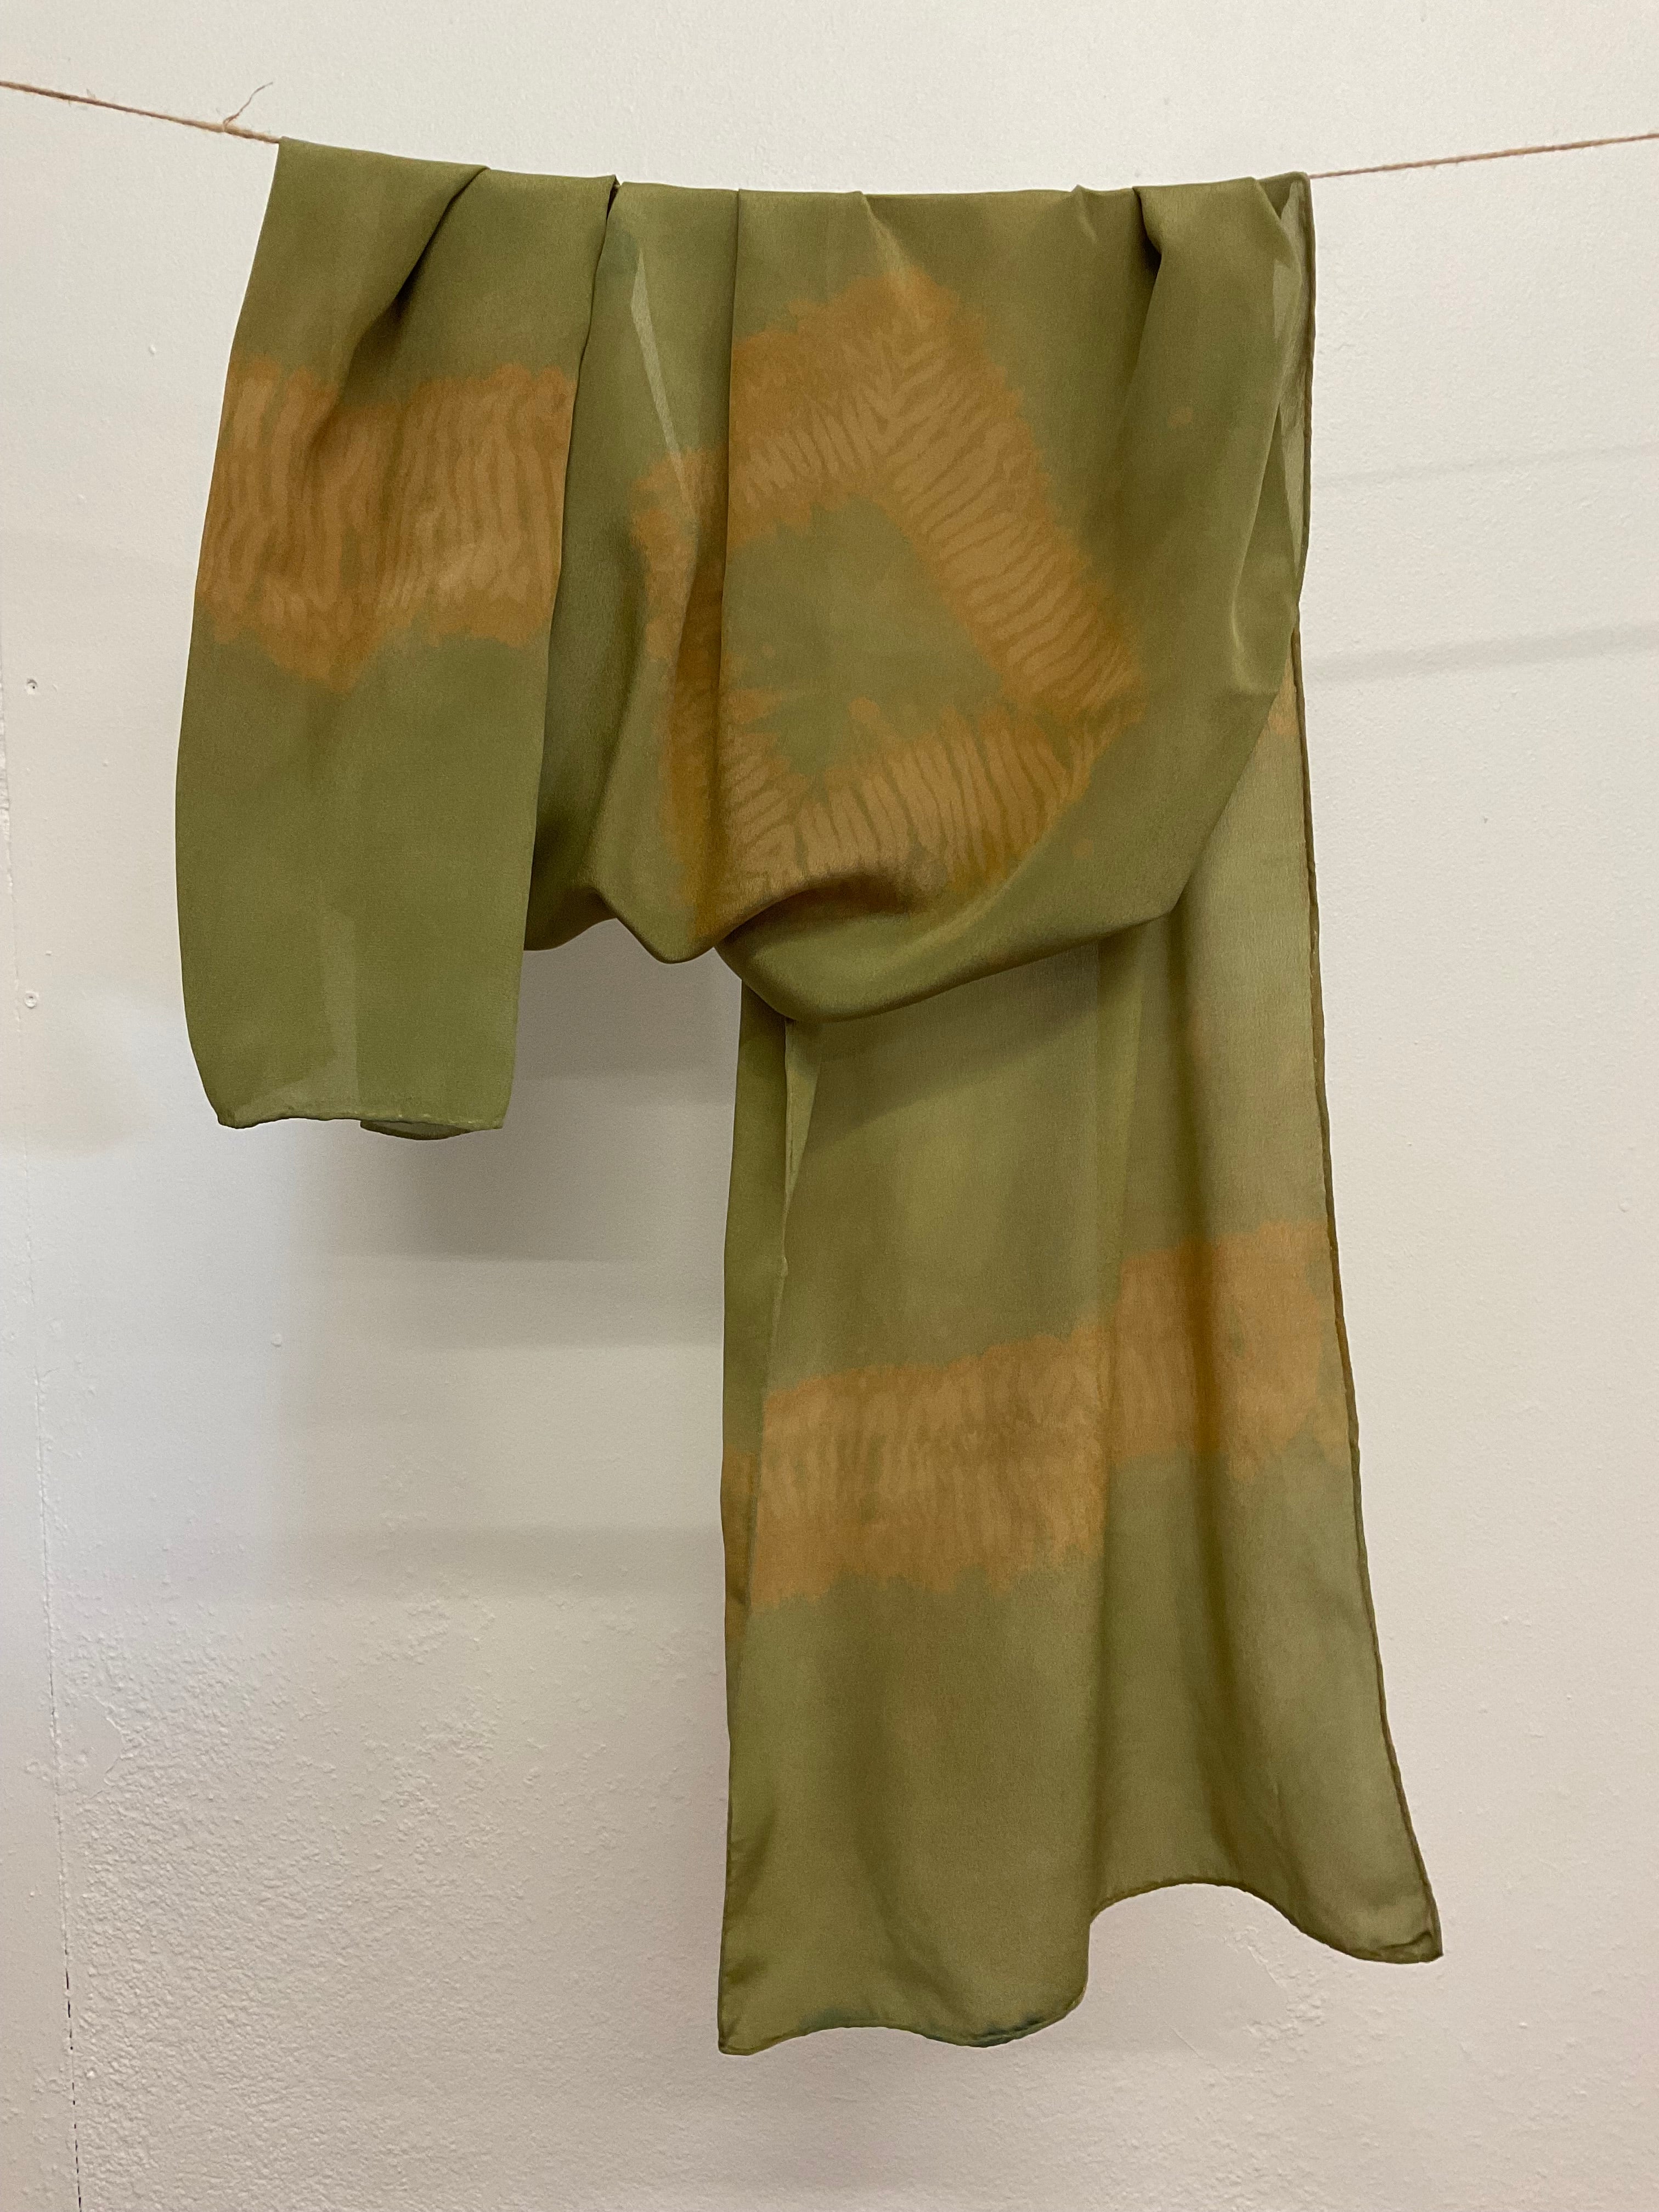 Silkislæða / Silk scarf